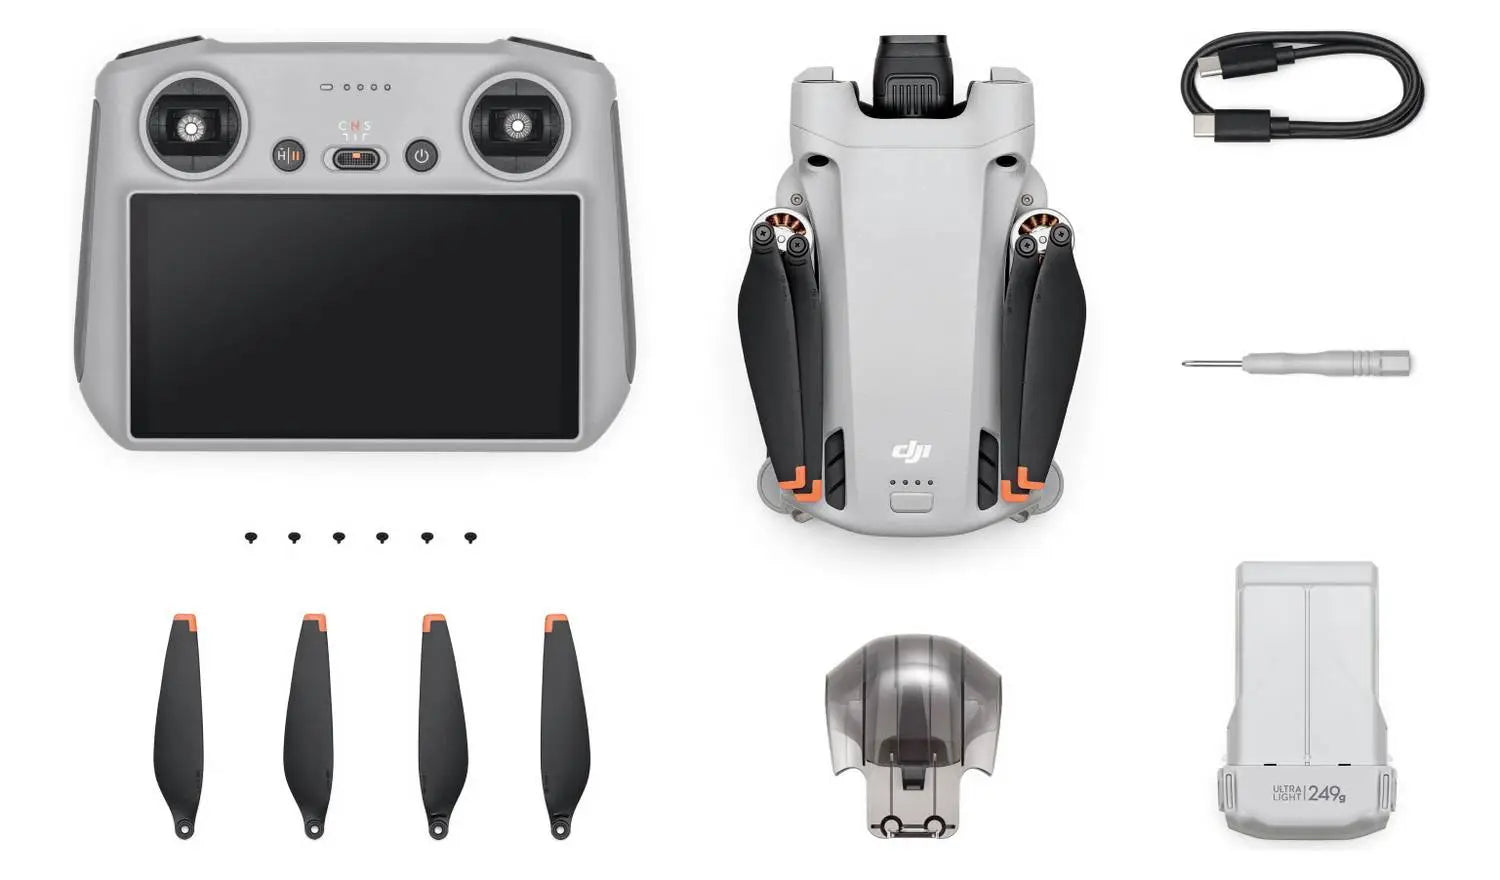 DJI Mini 3 Pro with Smart Controller DJI Florida Drone Supply DJI Mini 3 Pro with Smart Controller - Florida Drone Supply